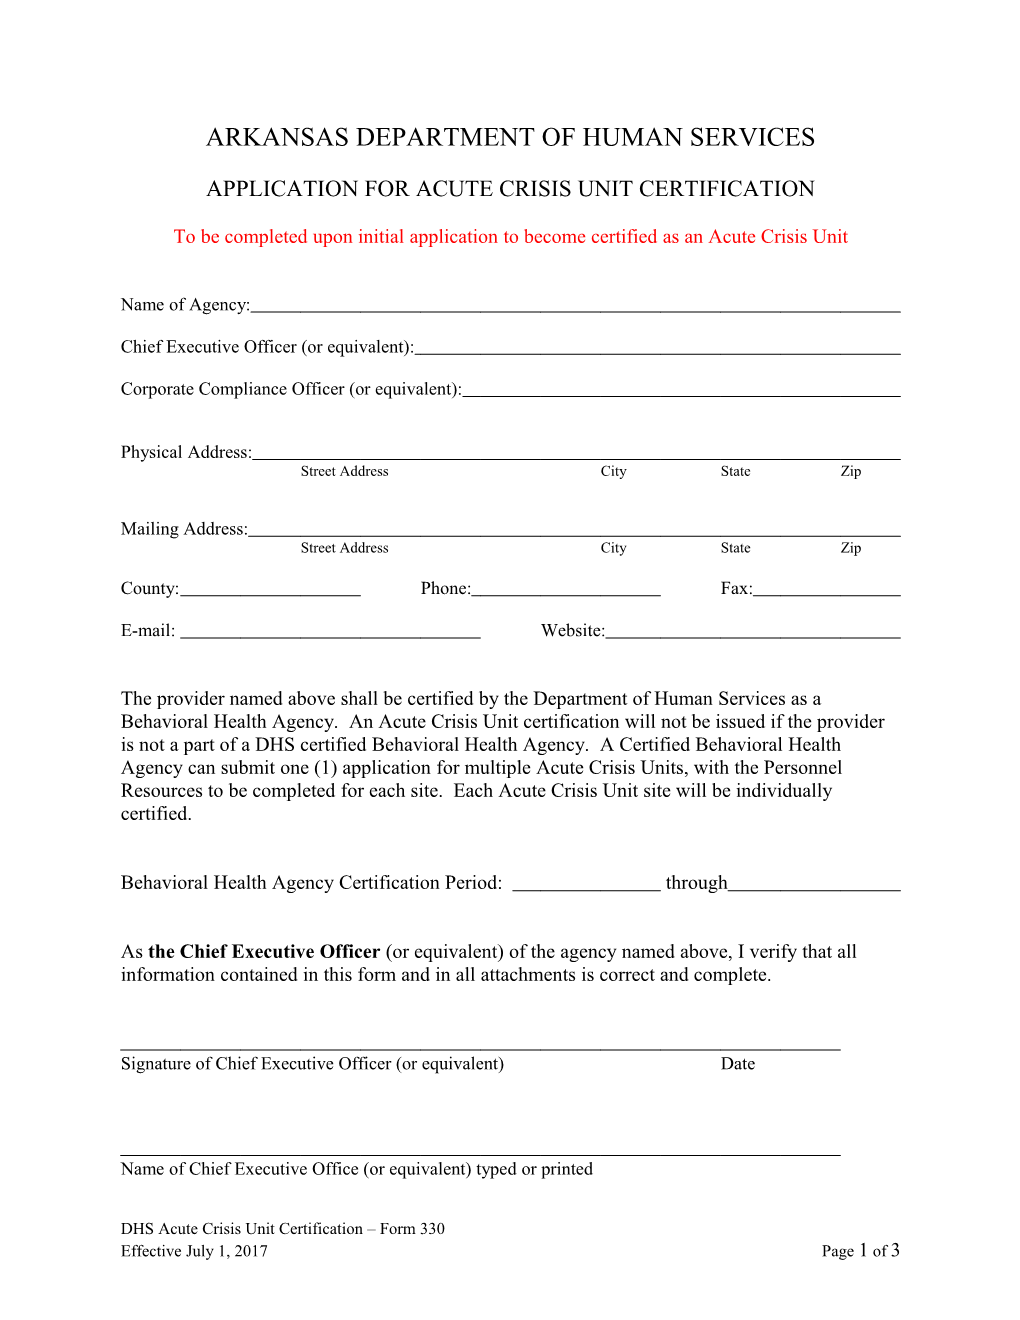 DHS ACUTE CRISIS UNIT CERTIFICATION Form 330